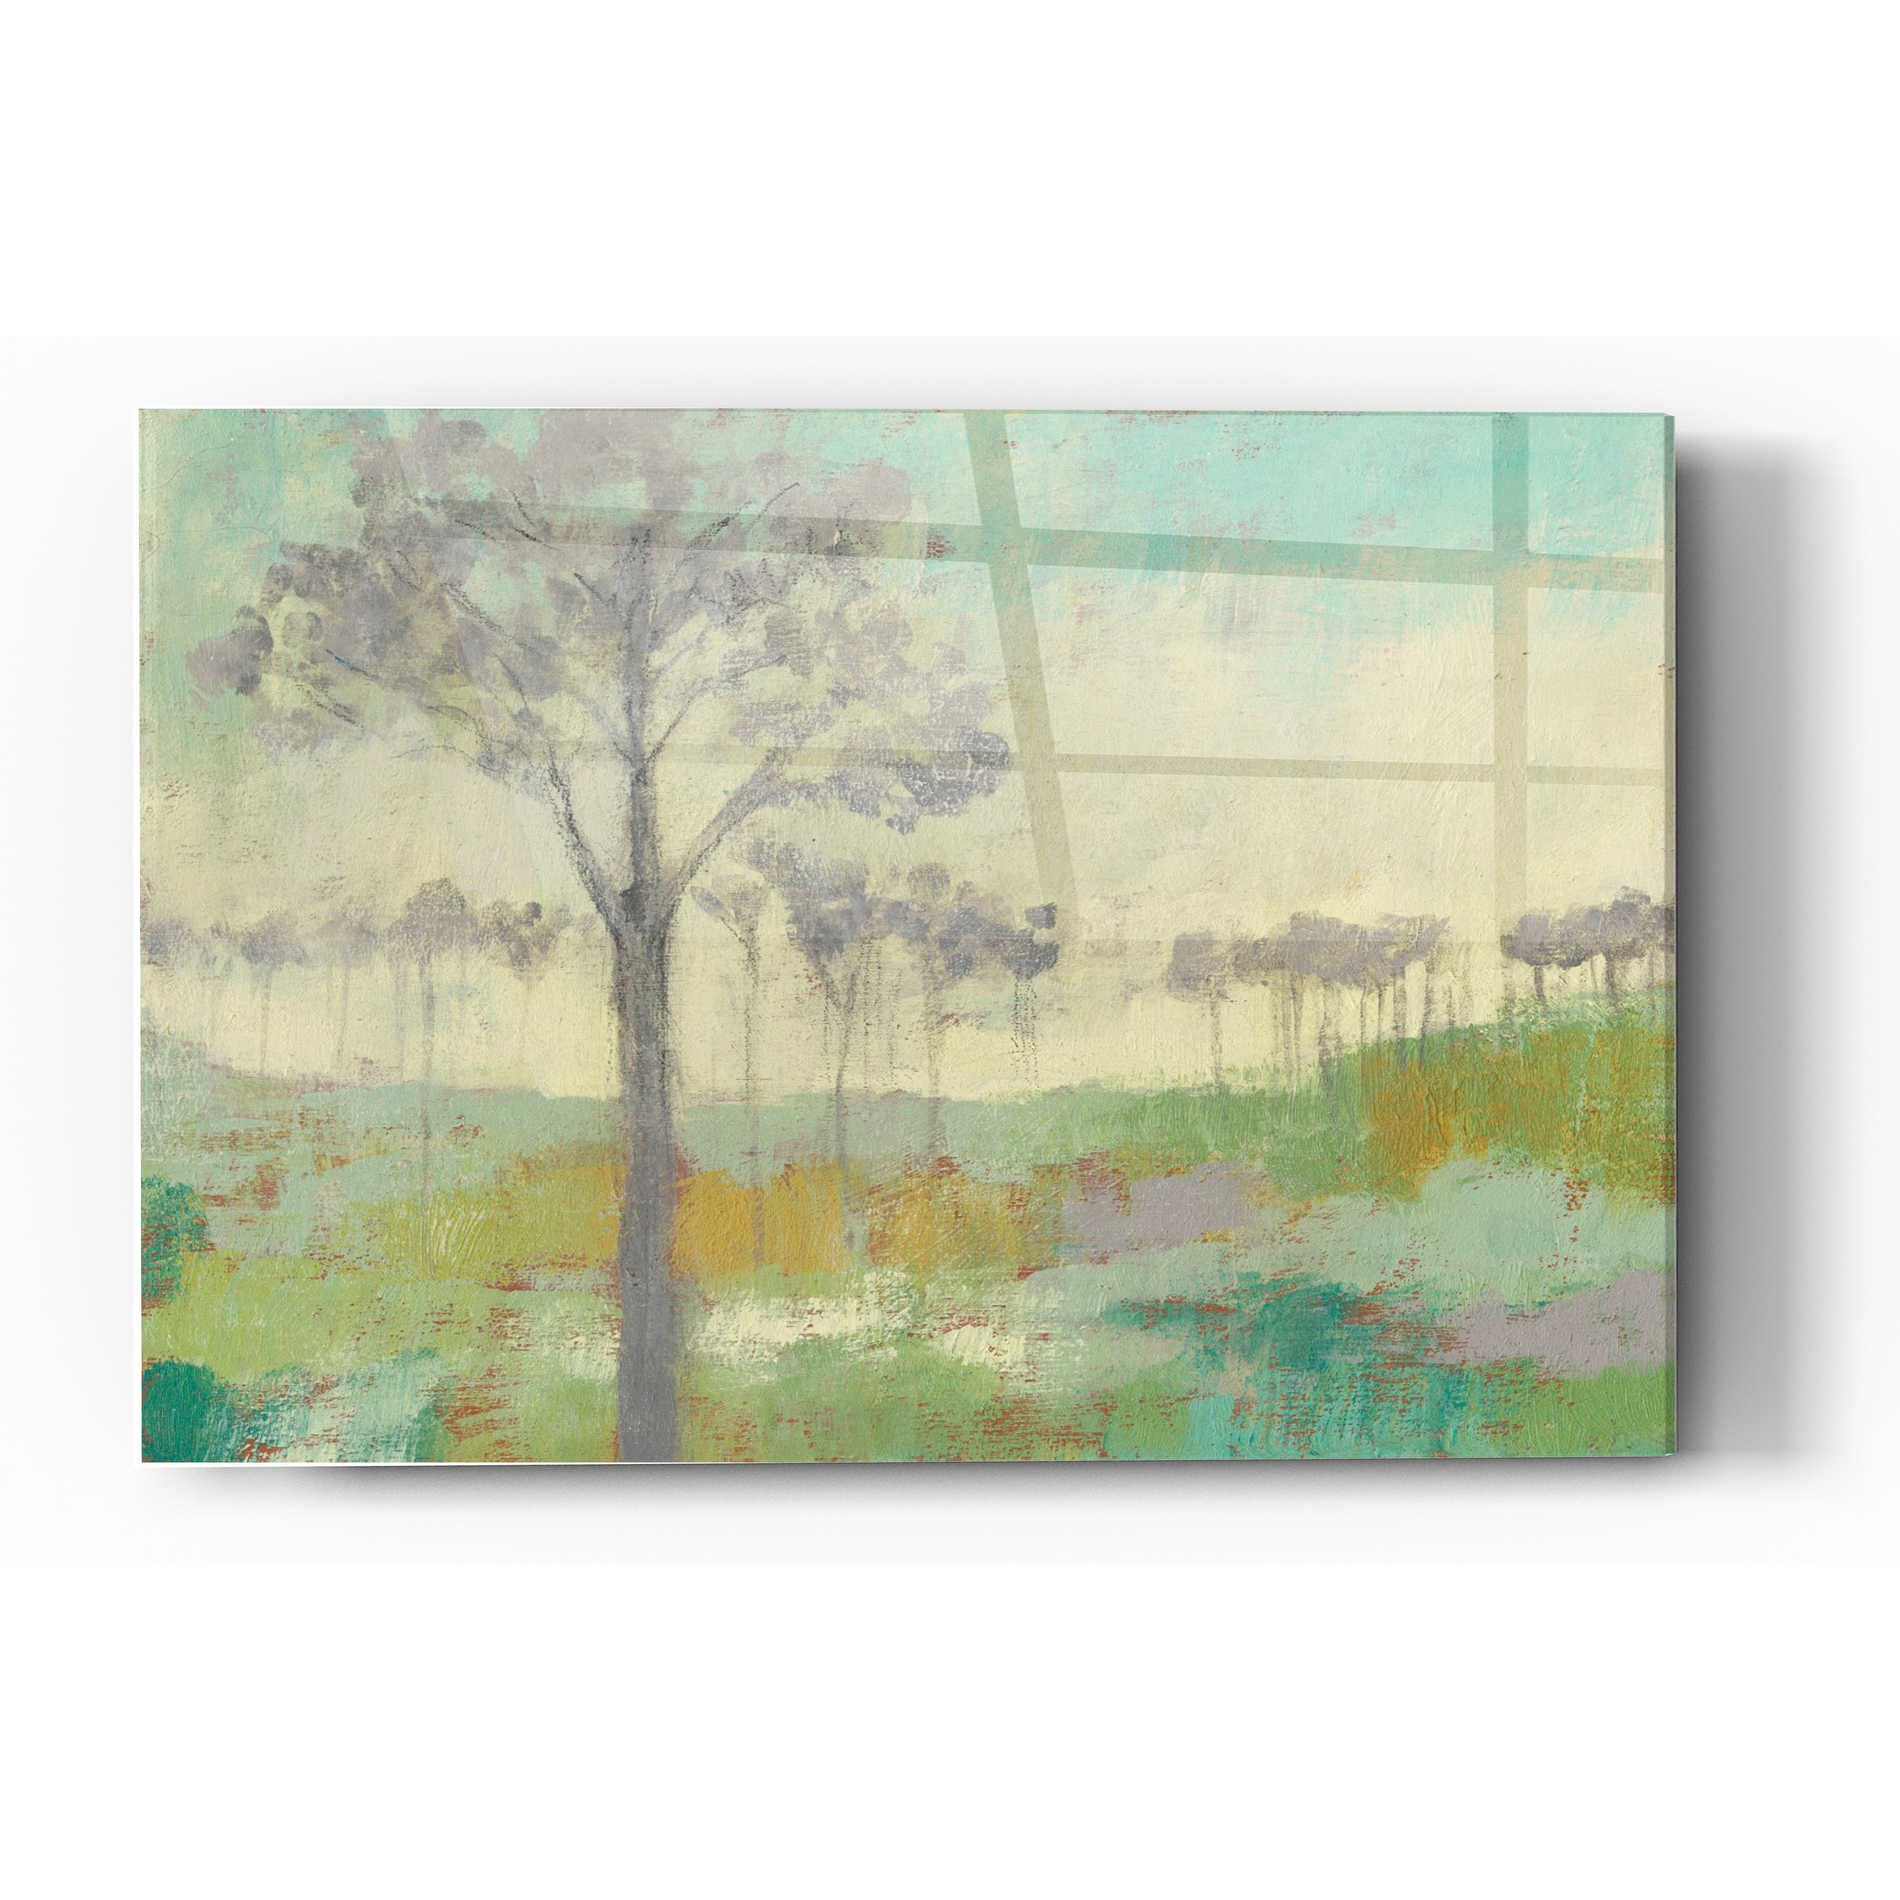 Epic Art 'Tree Stand II' by Jennifer Goldberger Acrylic Glass Wall Art,16x24